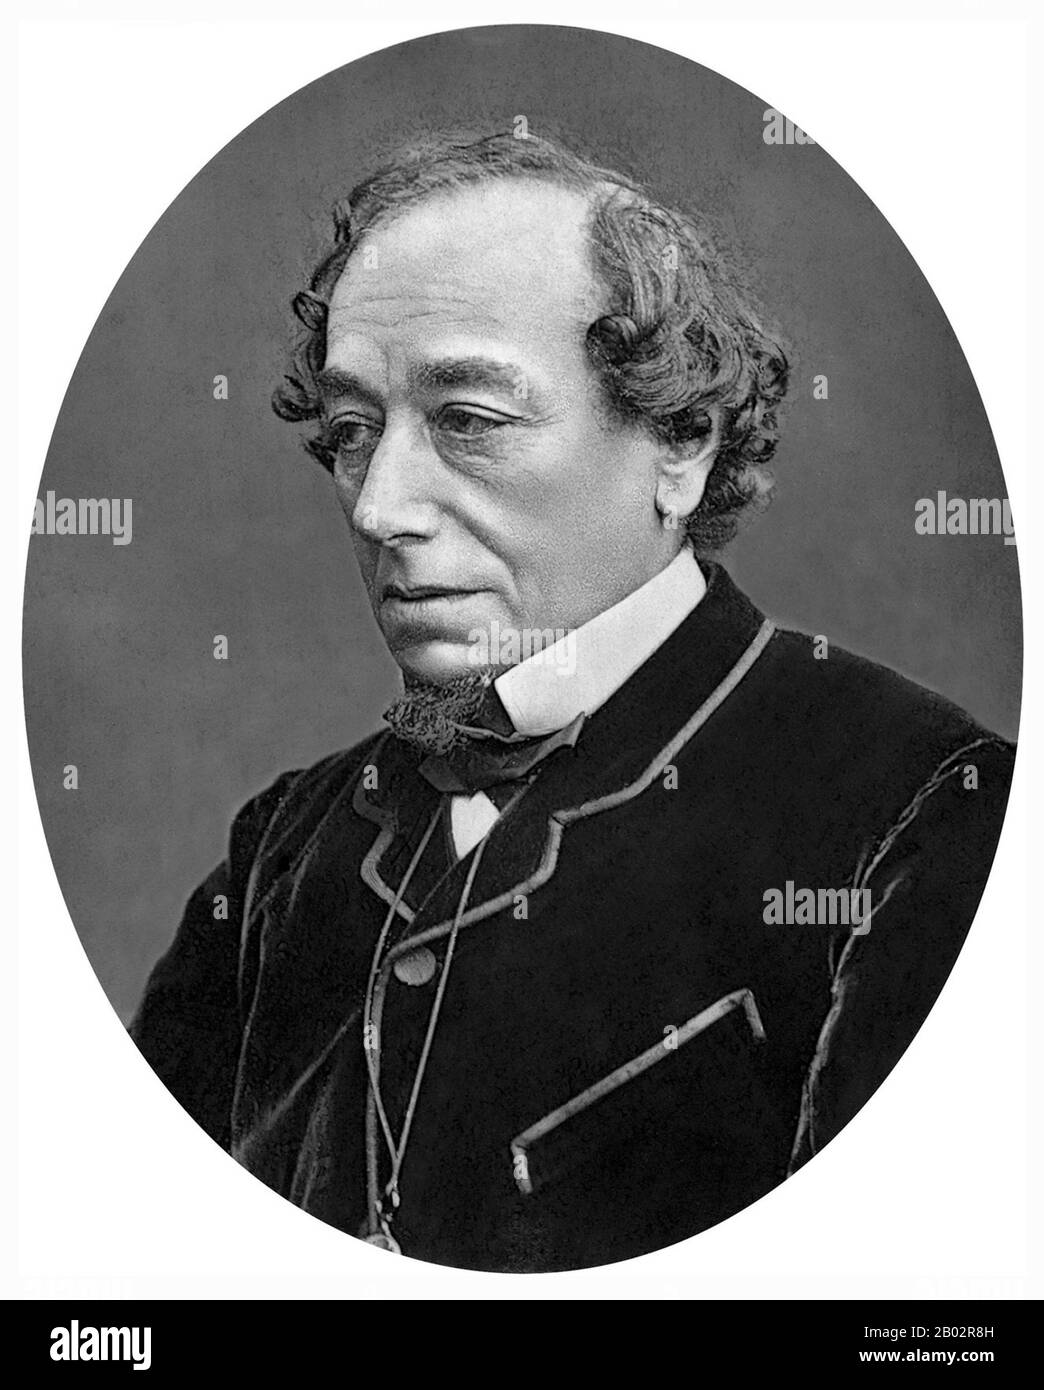 Benjamin Disraeli, premier comte de Beaconsfield, KG, PC, FRS, (21 décembre 1804 – 19 avril 1881) était un politicien, écrivain et aristocrate conservateur britannique qui a été deux fois premier ministre. Il a joué un rôle central dans la création du Parti conservateur moderne, définissant ses politiques et sa vaste portée. Disraeli se souvient de sa voix influente dans les affaires mondiales, de ses batailles politiques avec le chef libéral William Ewart Gladstone et de son conservatisme d'une nation ou de sa « démocratie conservatrice ». Il a fait des conservateurs le parti le plus identifié avec la gloire et le pouvoir de l'Empir britannique Banque D'Images